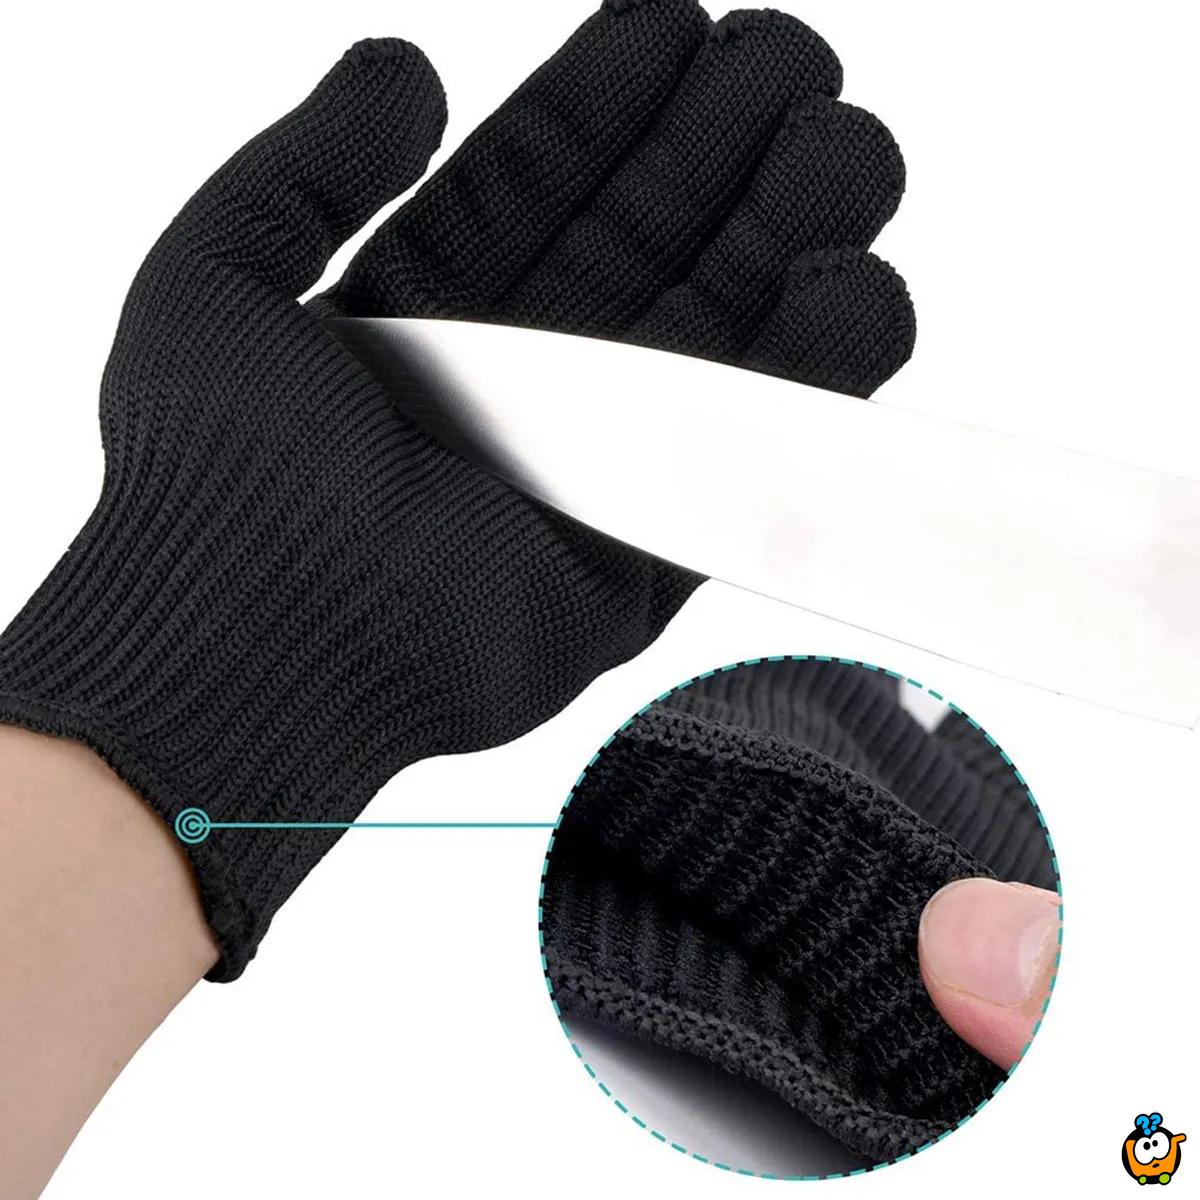 Hand Protective – Rukavice za zaštitu ruku tokom rada